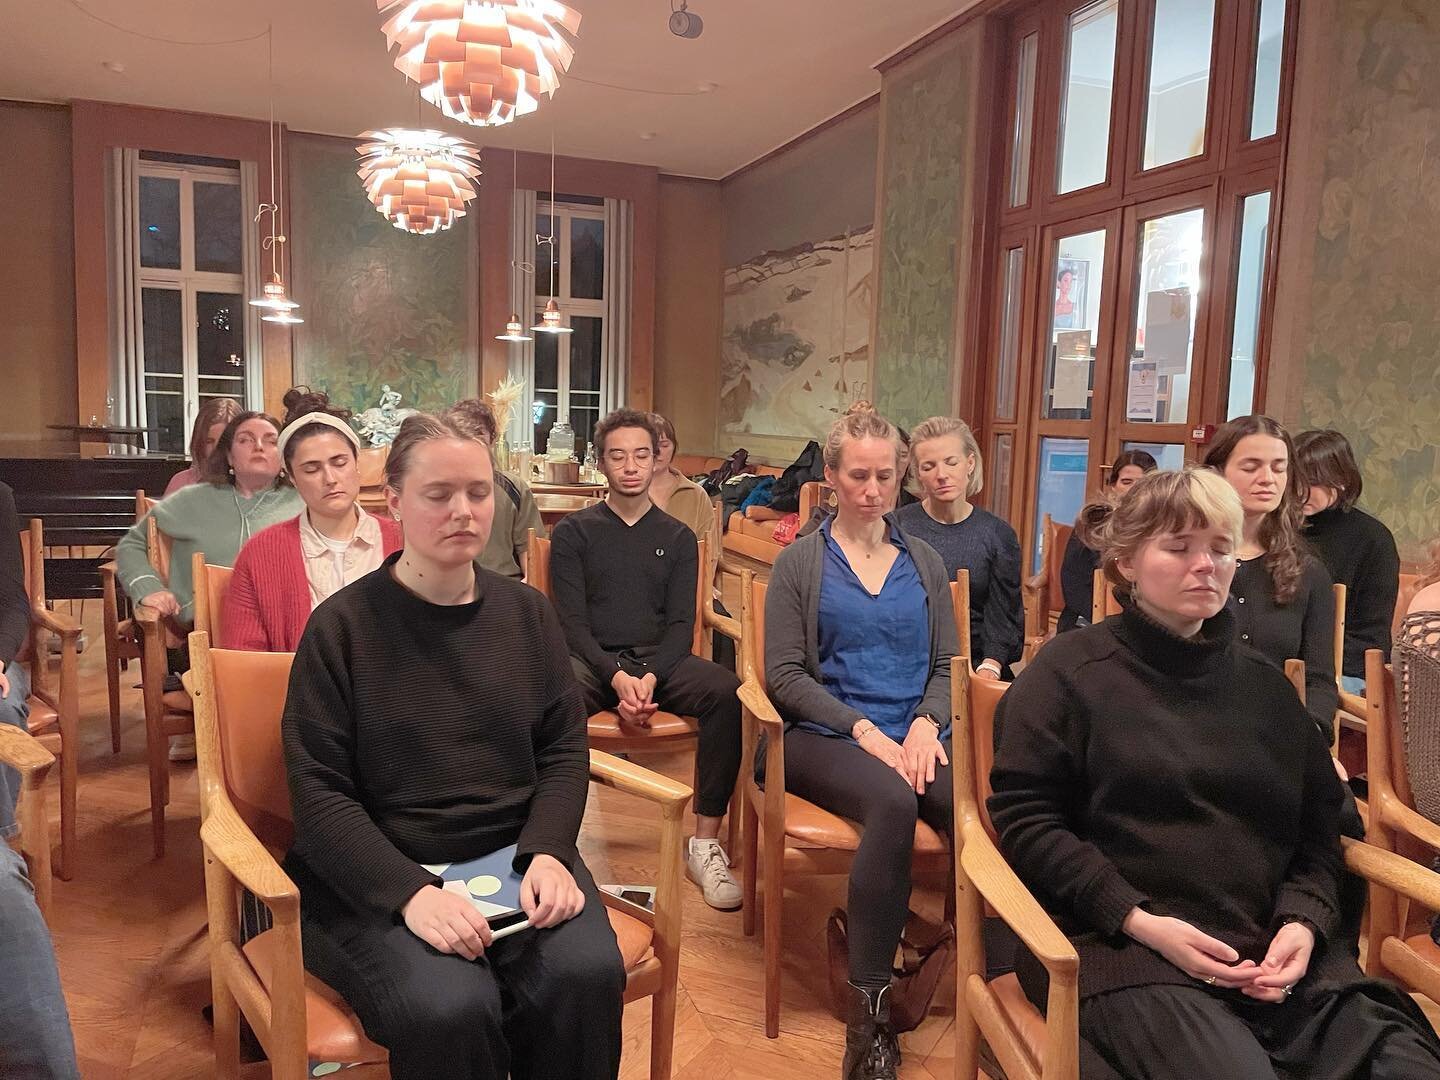 Mercredi soir dernier, j&rsquo;ai eu la chance et le plaisir d&rsquo;animer un atelier de meditation pour la @fondation_danoise pour le r&eacute;seau professionnel Dj&oslash;f. On &eacute;tait dans une salle sublime avec une trentaine de participants